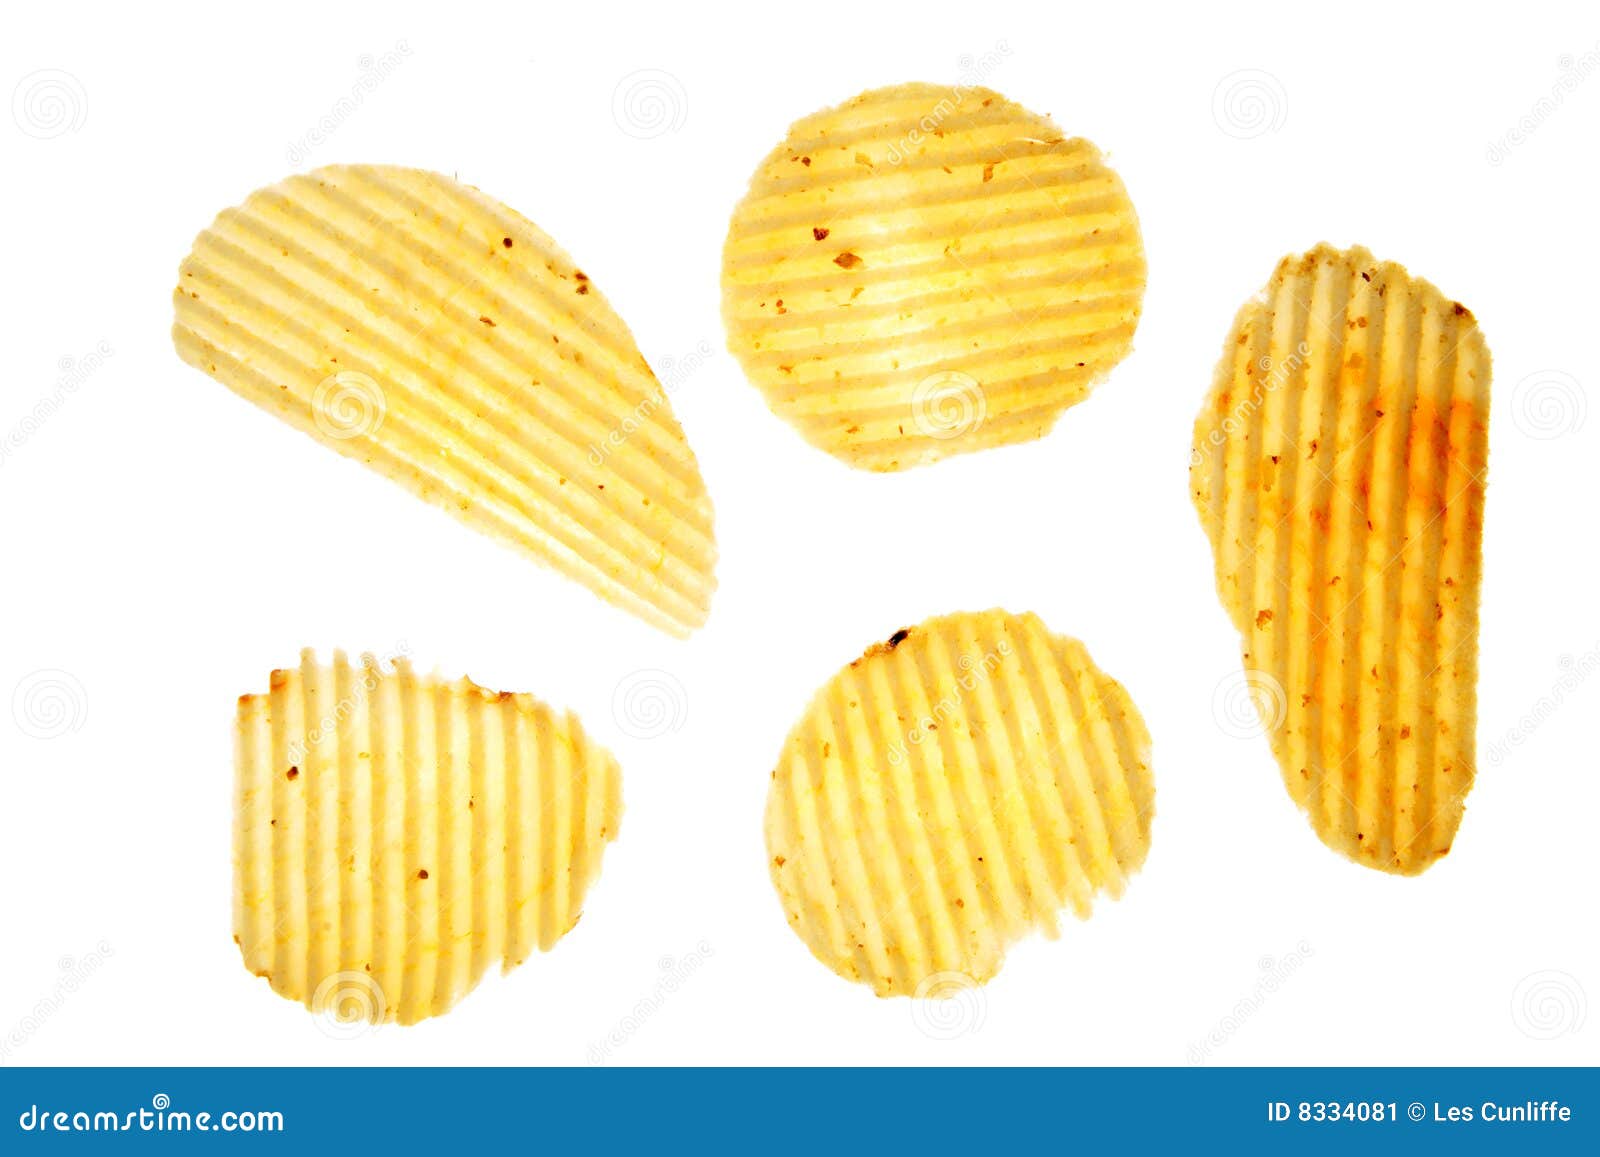 Potato crisps stock image. Image of crisps, isolated, background - 8334081